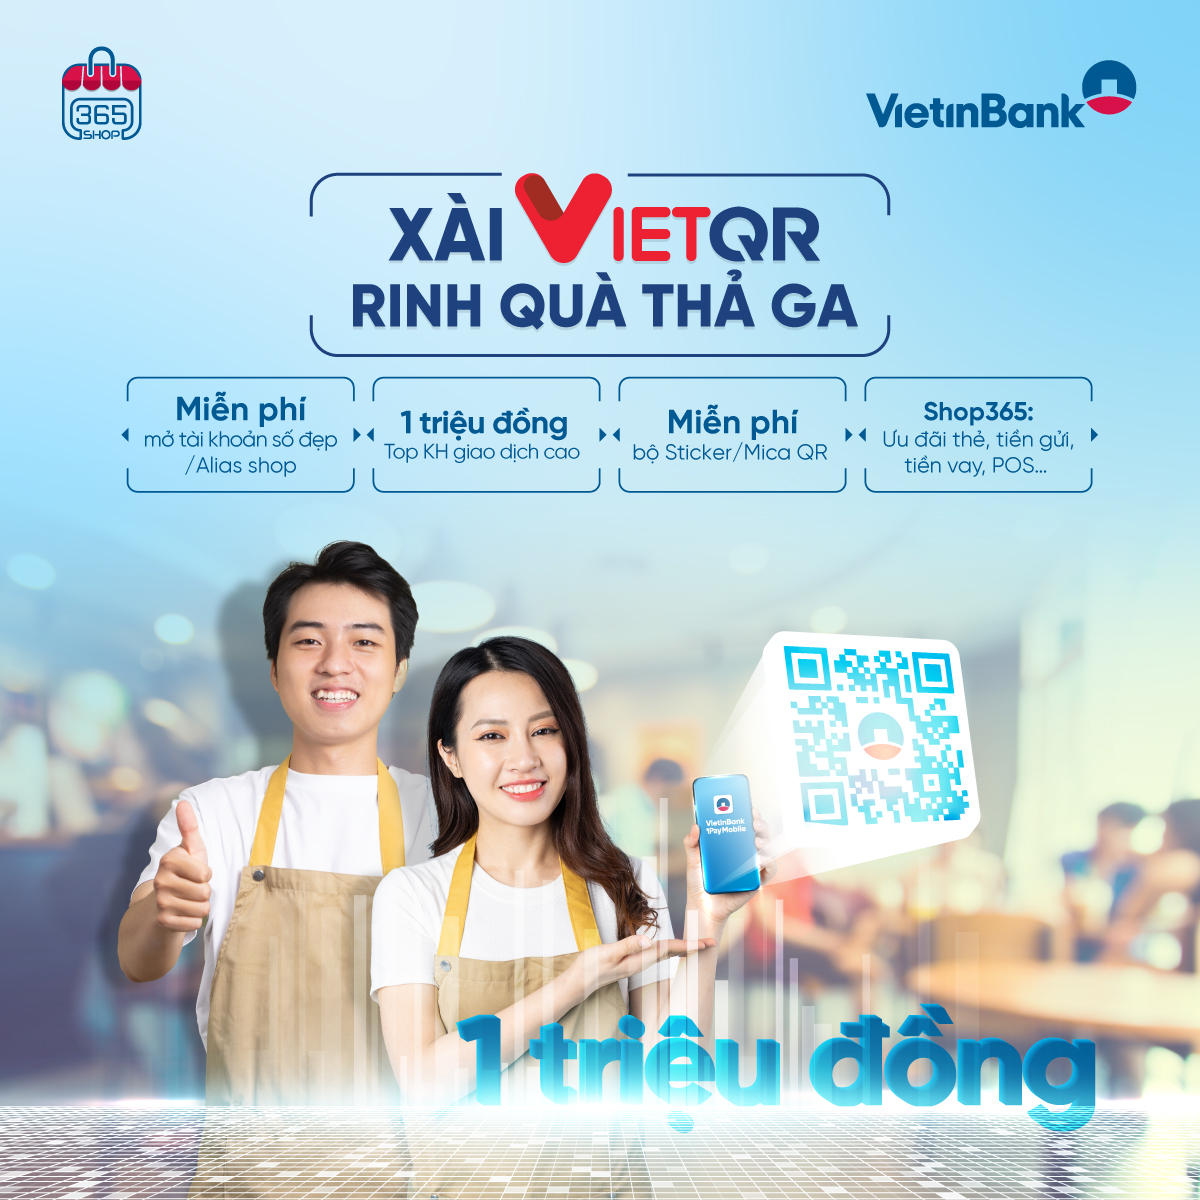 vietinbank ra mat san pham danh rieng cho khach hang kinh doanh va tang uu dai den 1000000 vnd hinh 2